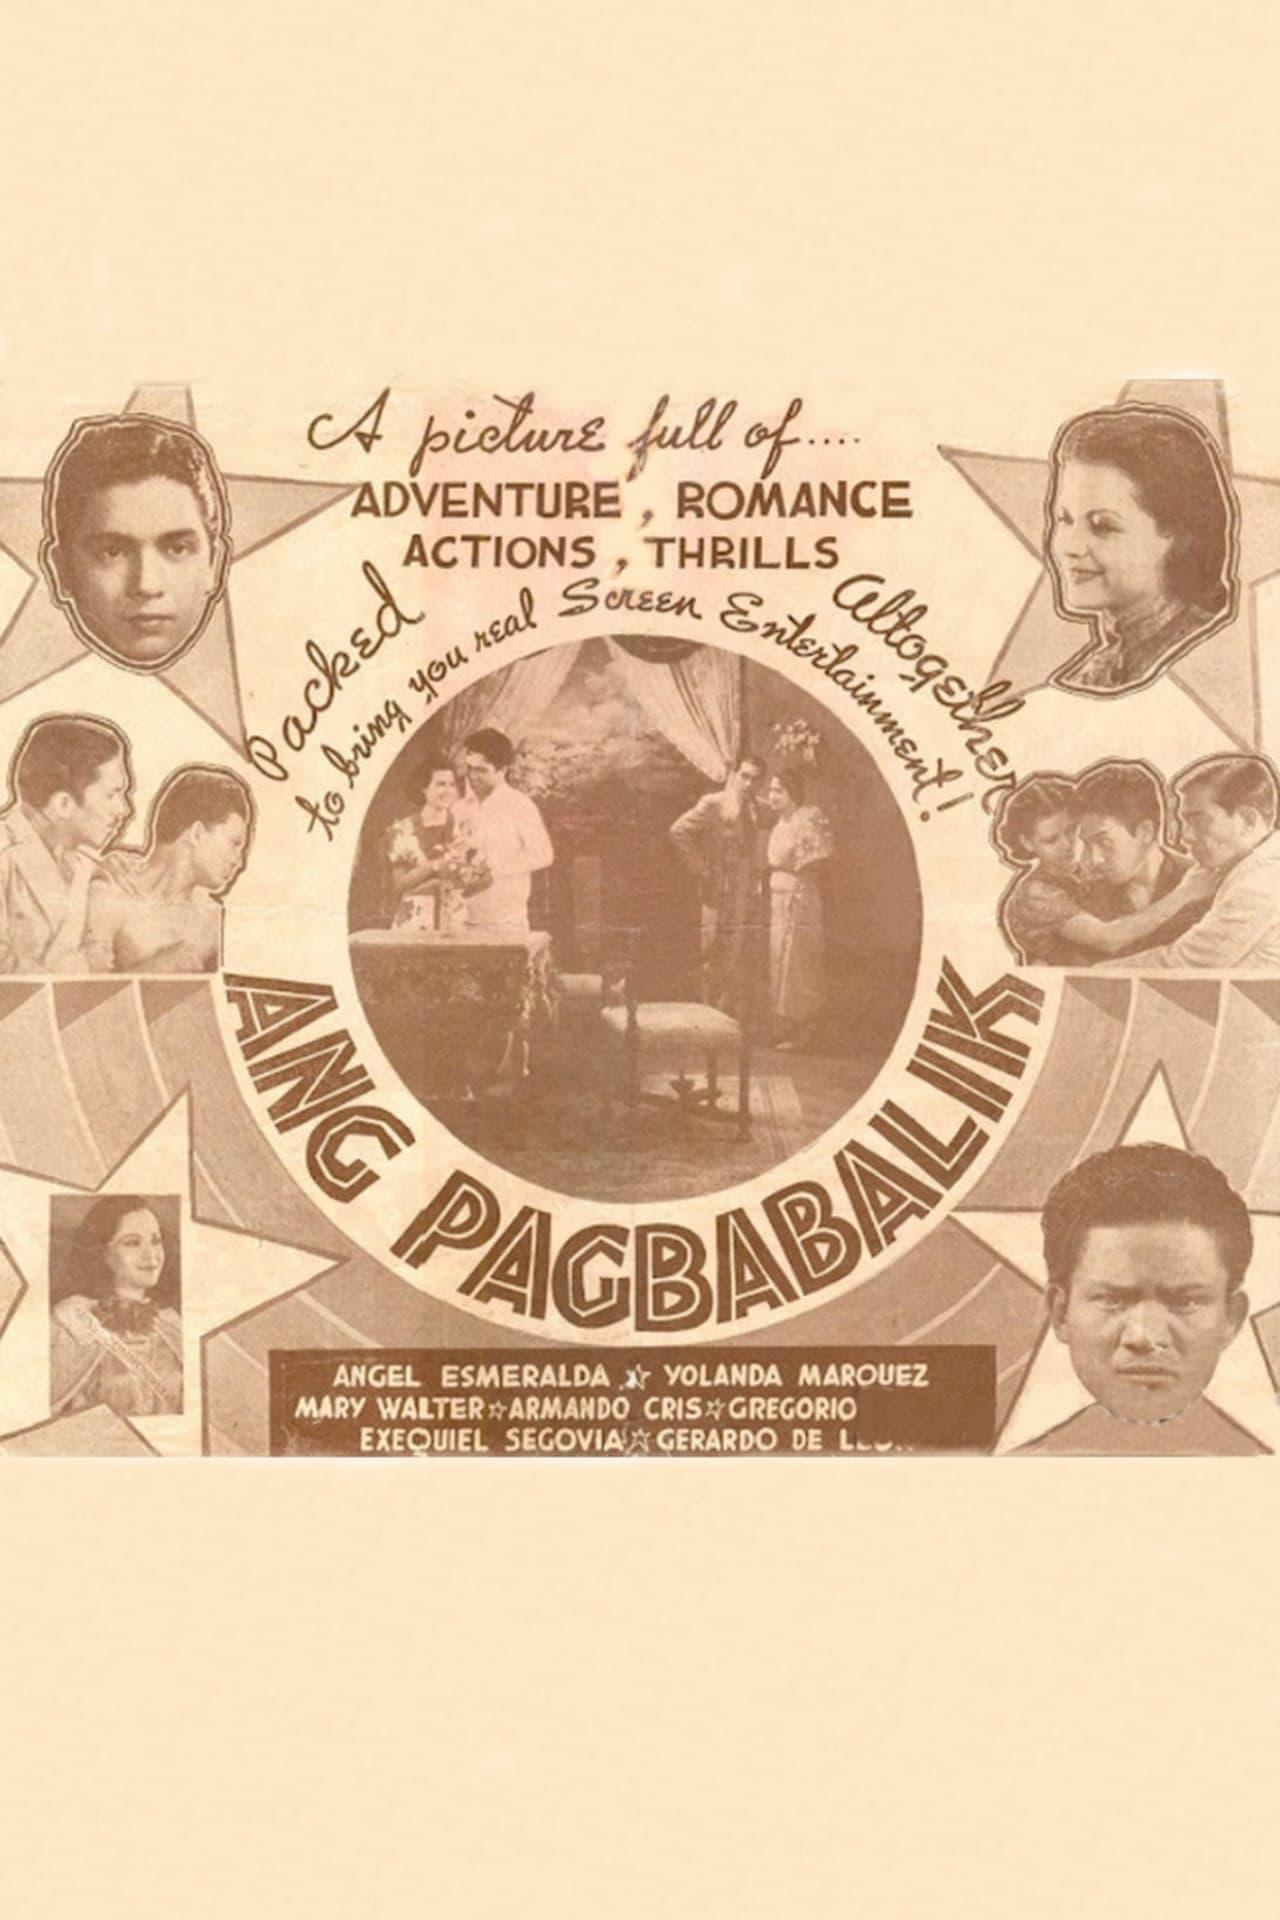 Ang Pagbabalik poster